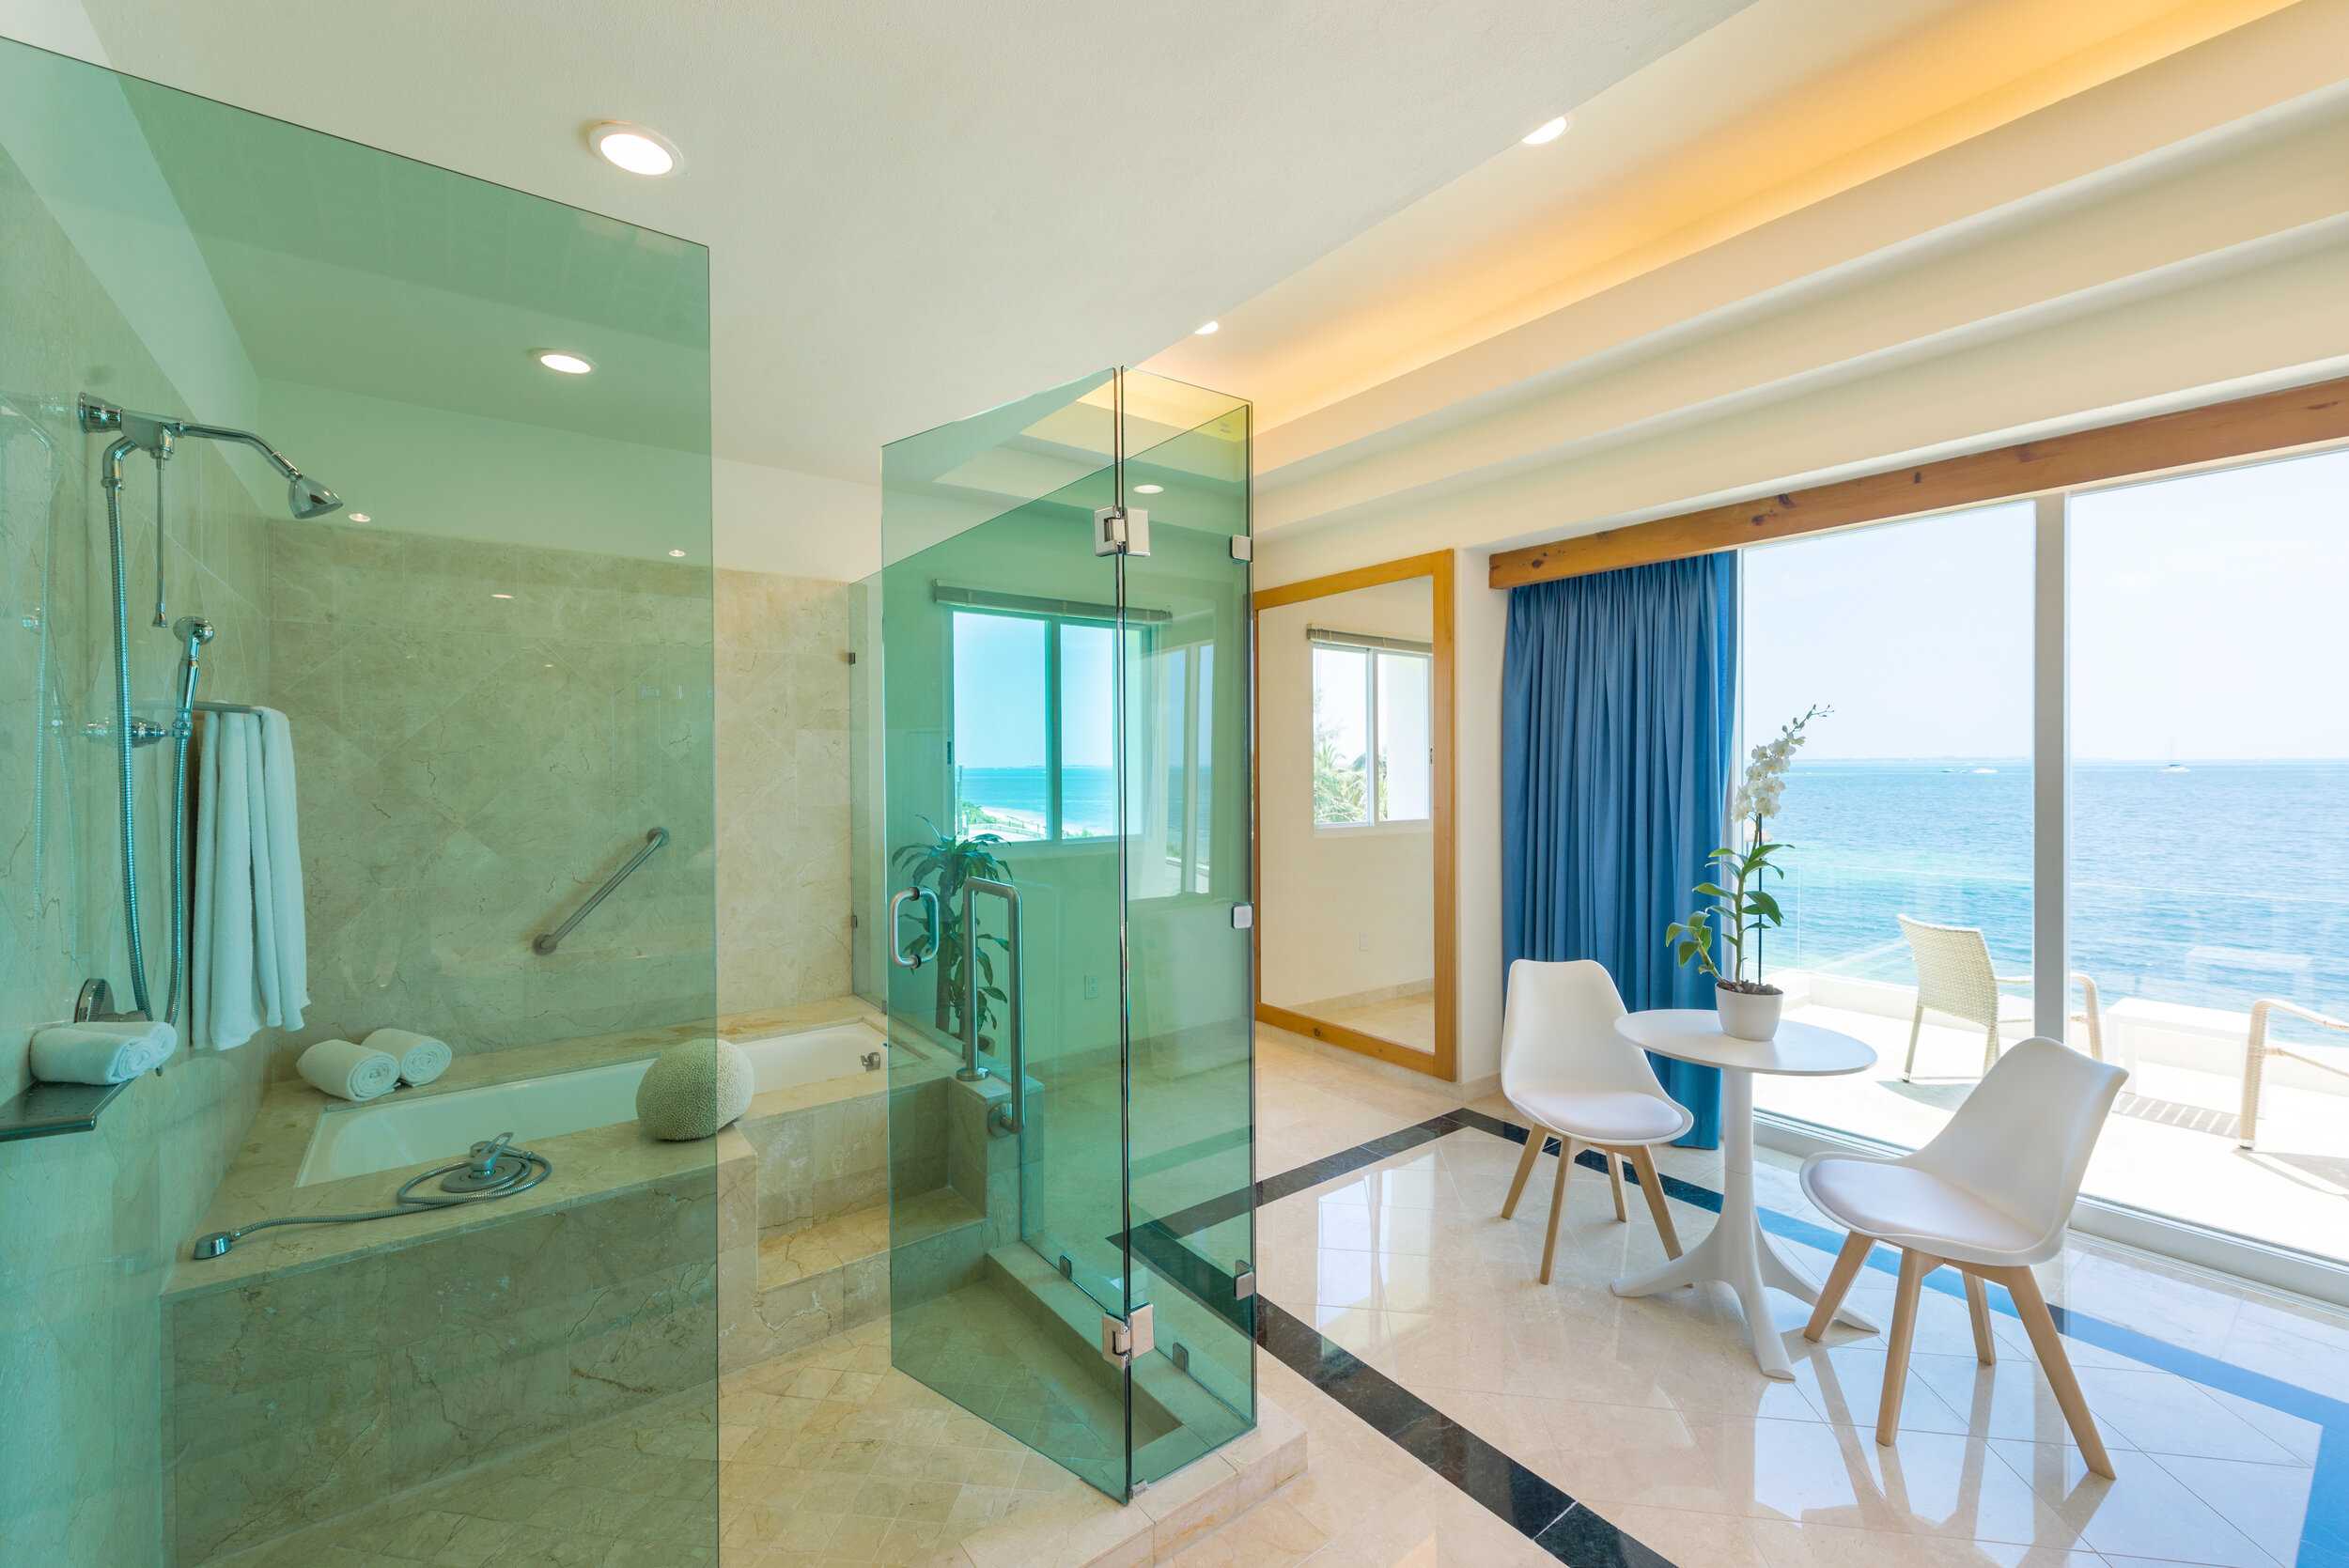 Cancun villa bath.jpg